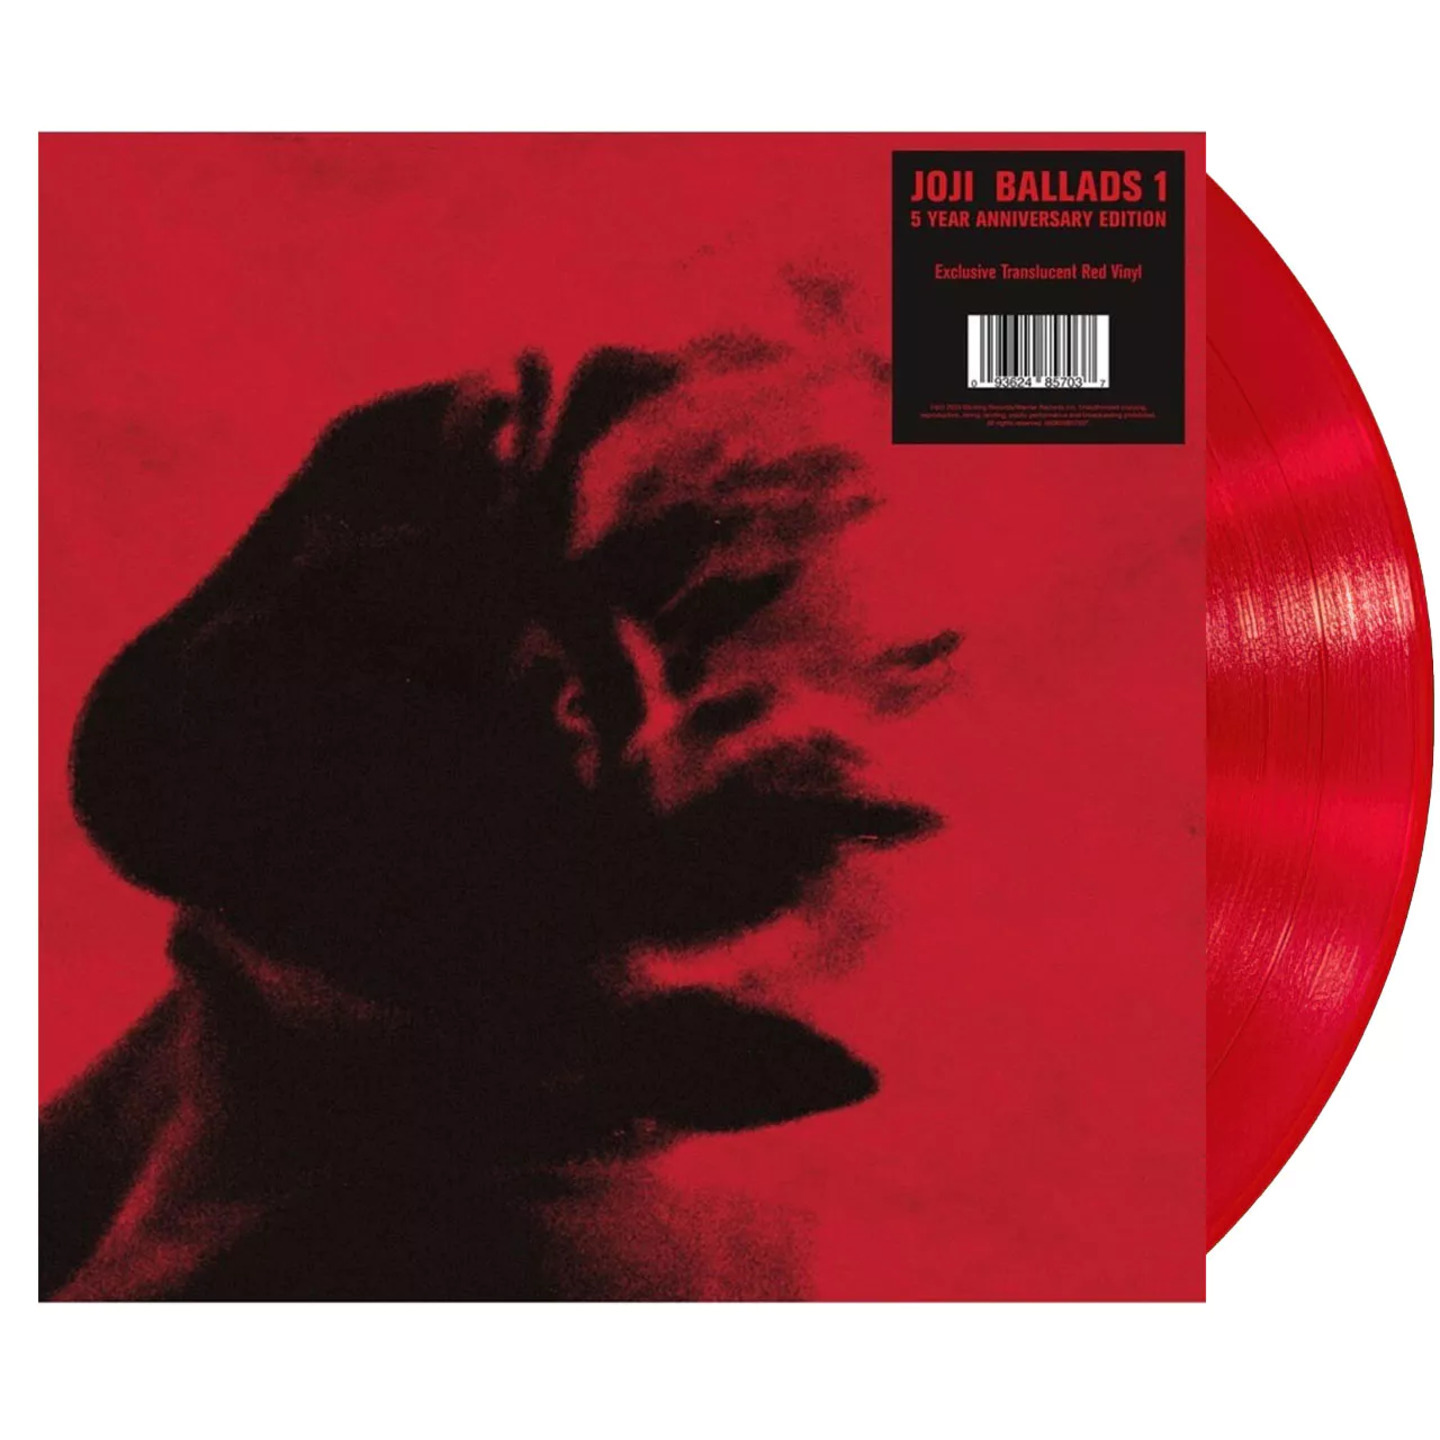 JOJI - Ballads 1 5th Anniversary Translucent Red vinyl